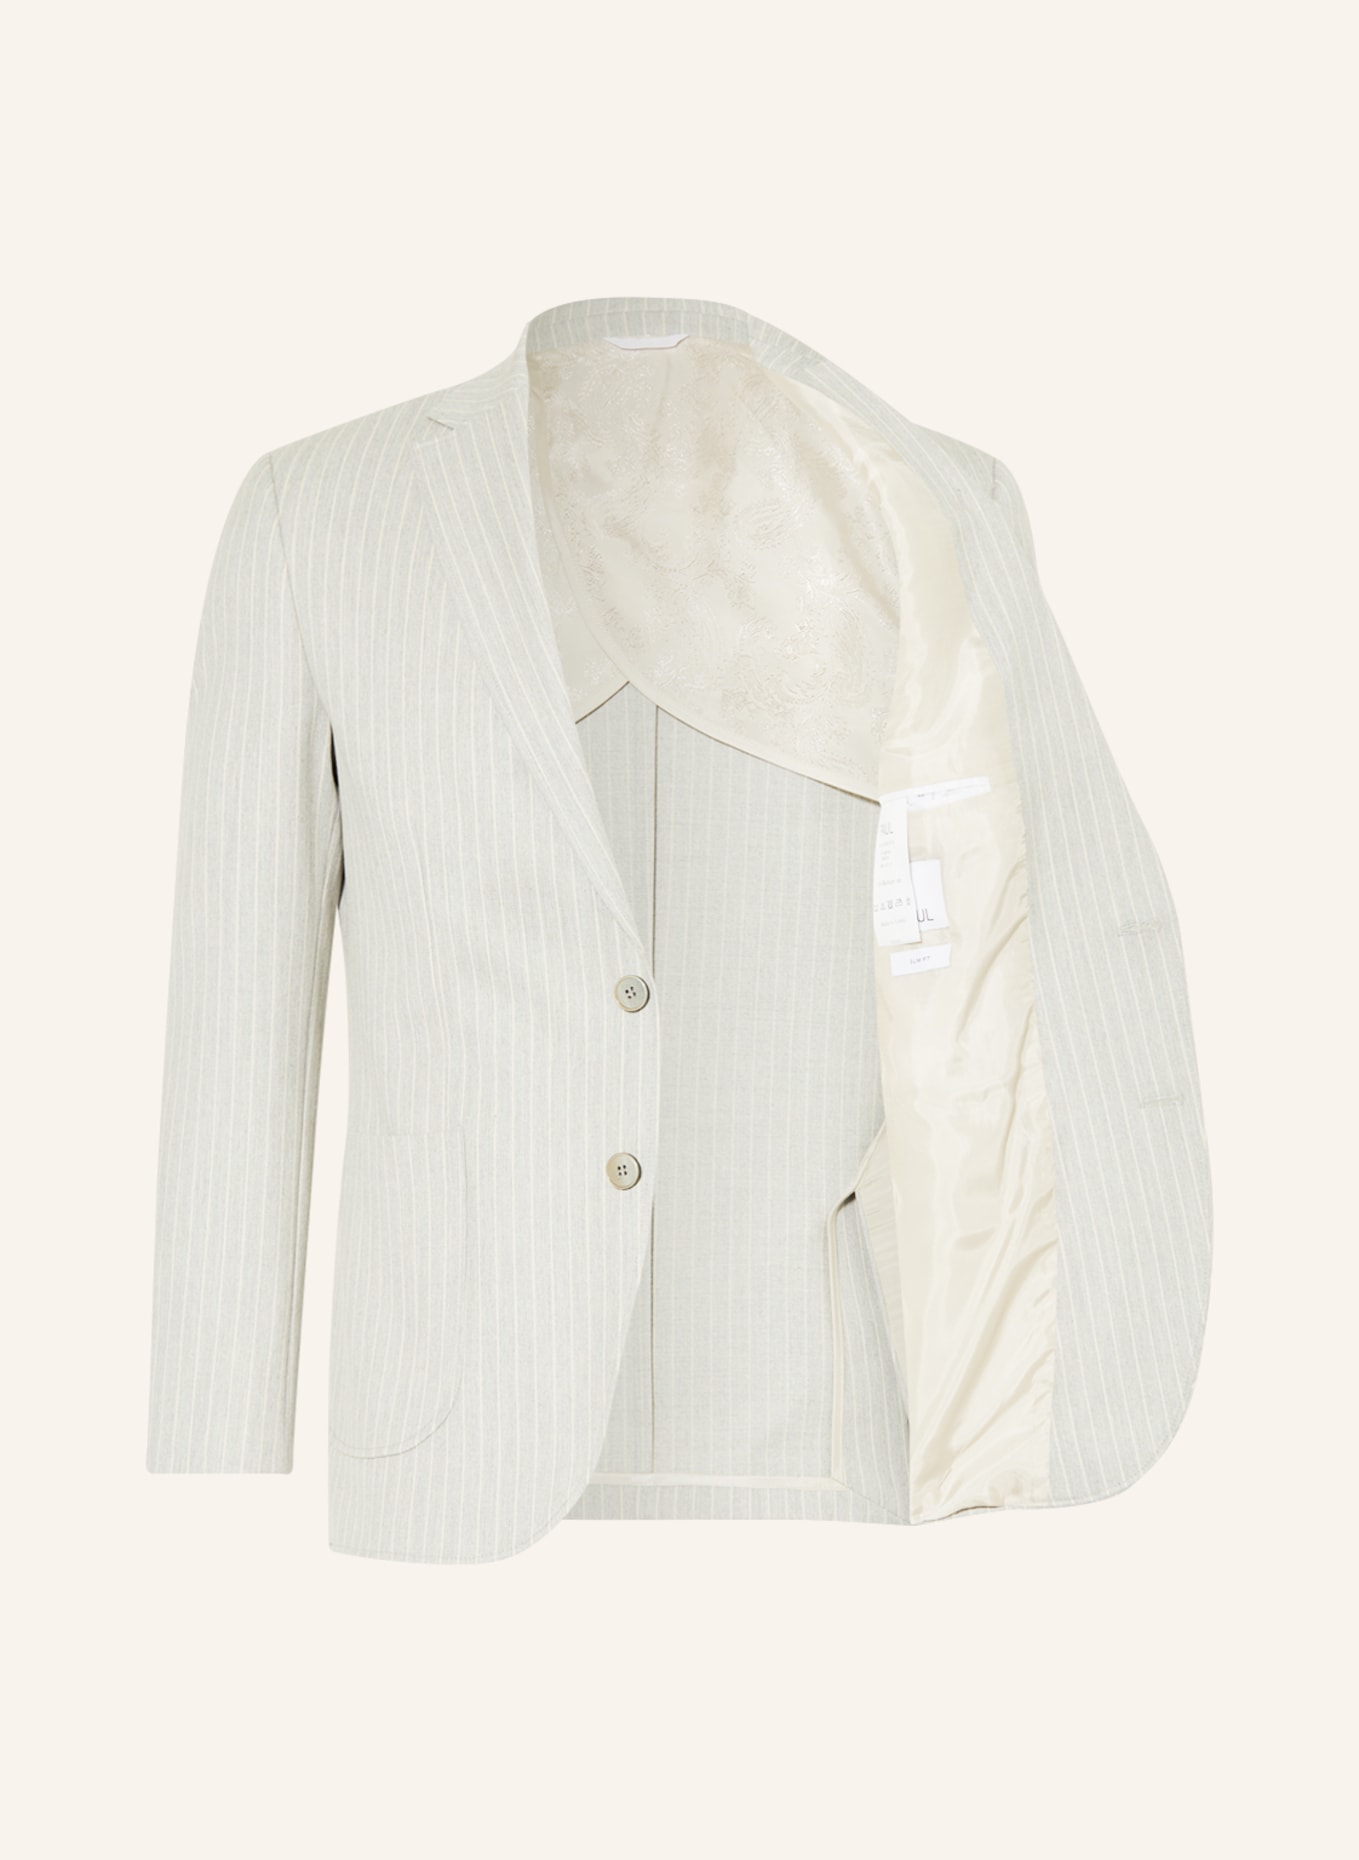 PAUL Suit jacket Slim Fit, Color: LIGHT GRAY/ ECRU (Image 4)